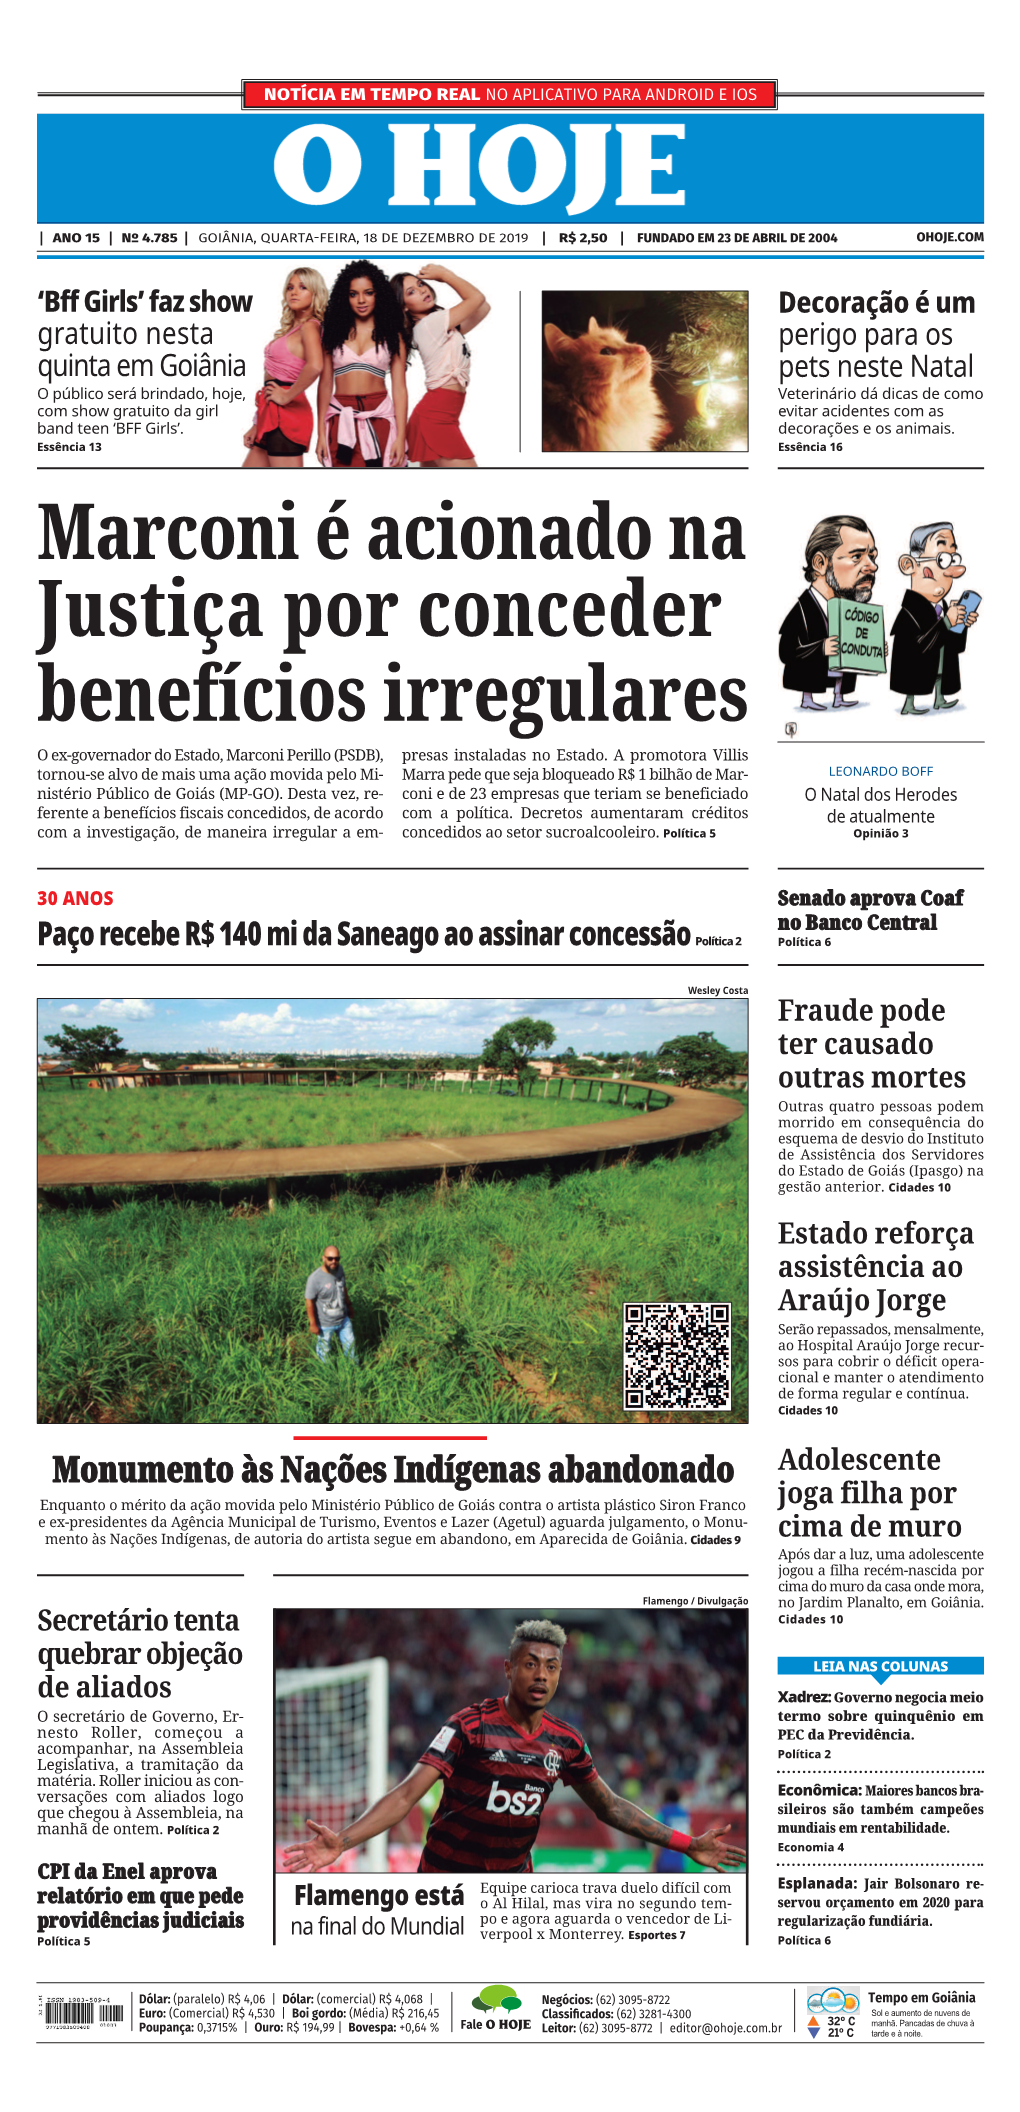 Justiça Por Conceder Benefícios Irregulares O Ex-Governador Do Estado, Marconi Perillo (PSDB), Presas Instaladas No Estado